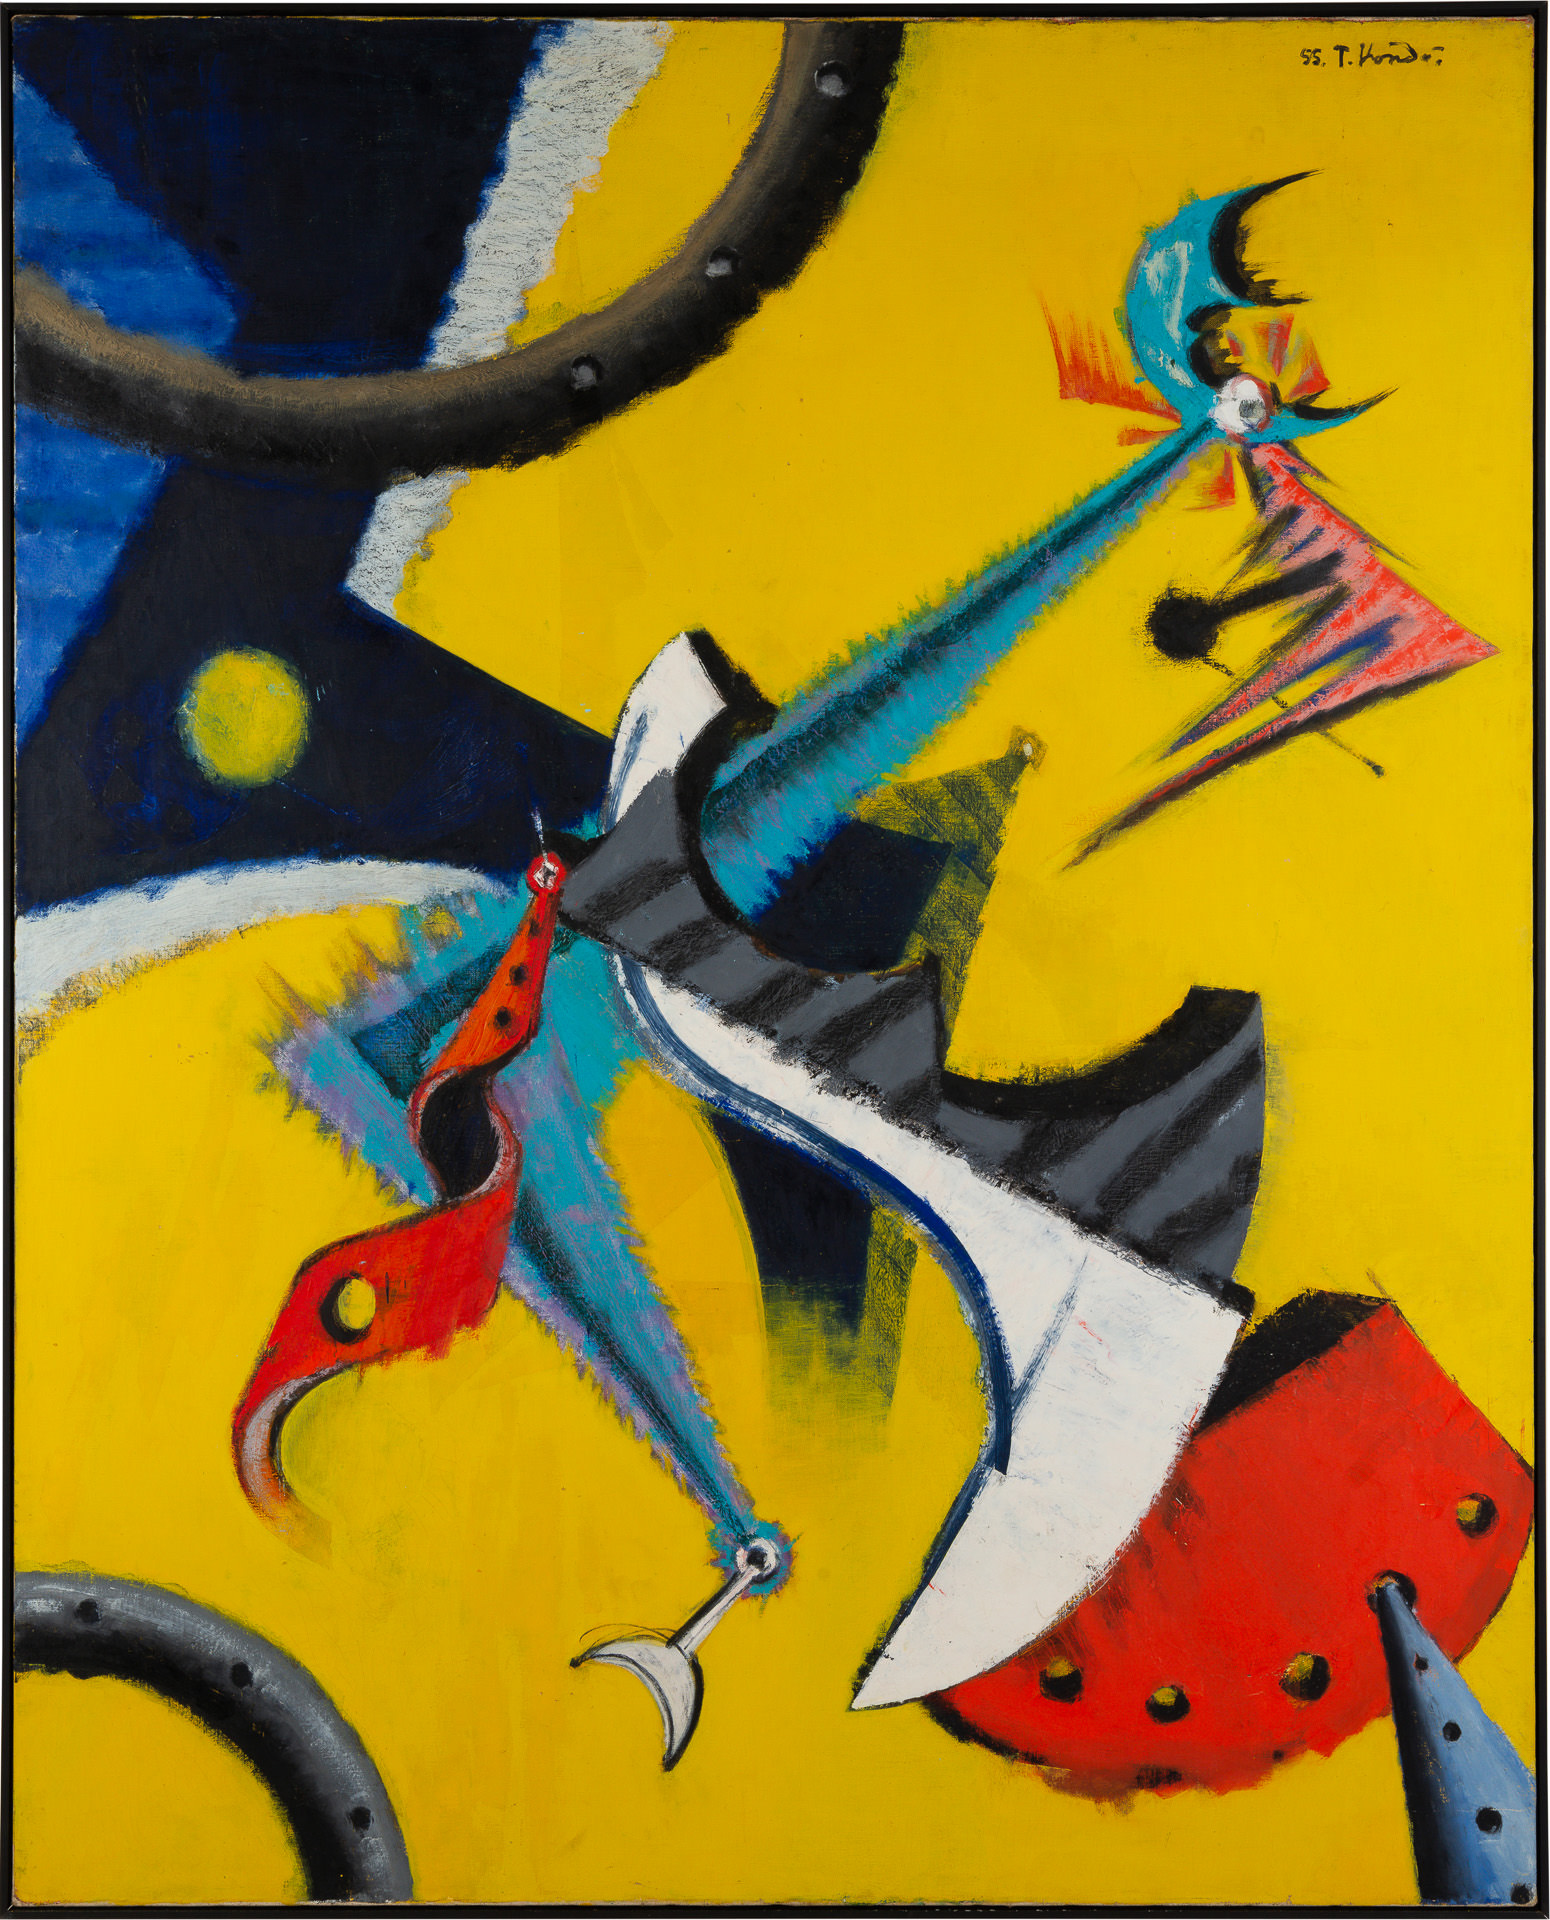 近藤竜男〈（周期）〉, 油彩・カンヴァス, 161.5×130.0, 第1回サトウ画廊個展, 1955